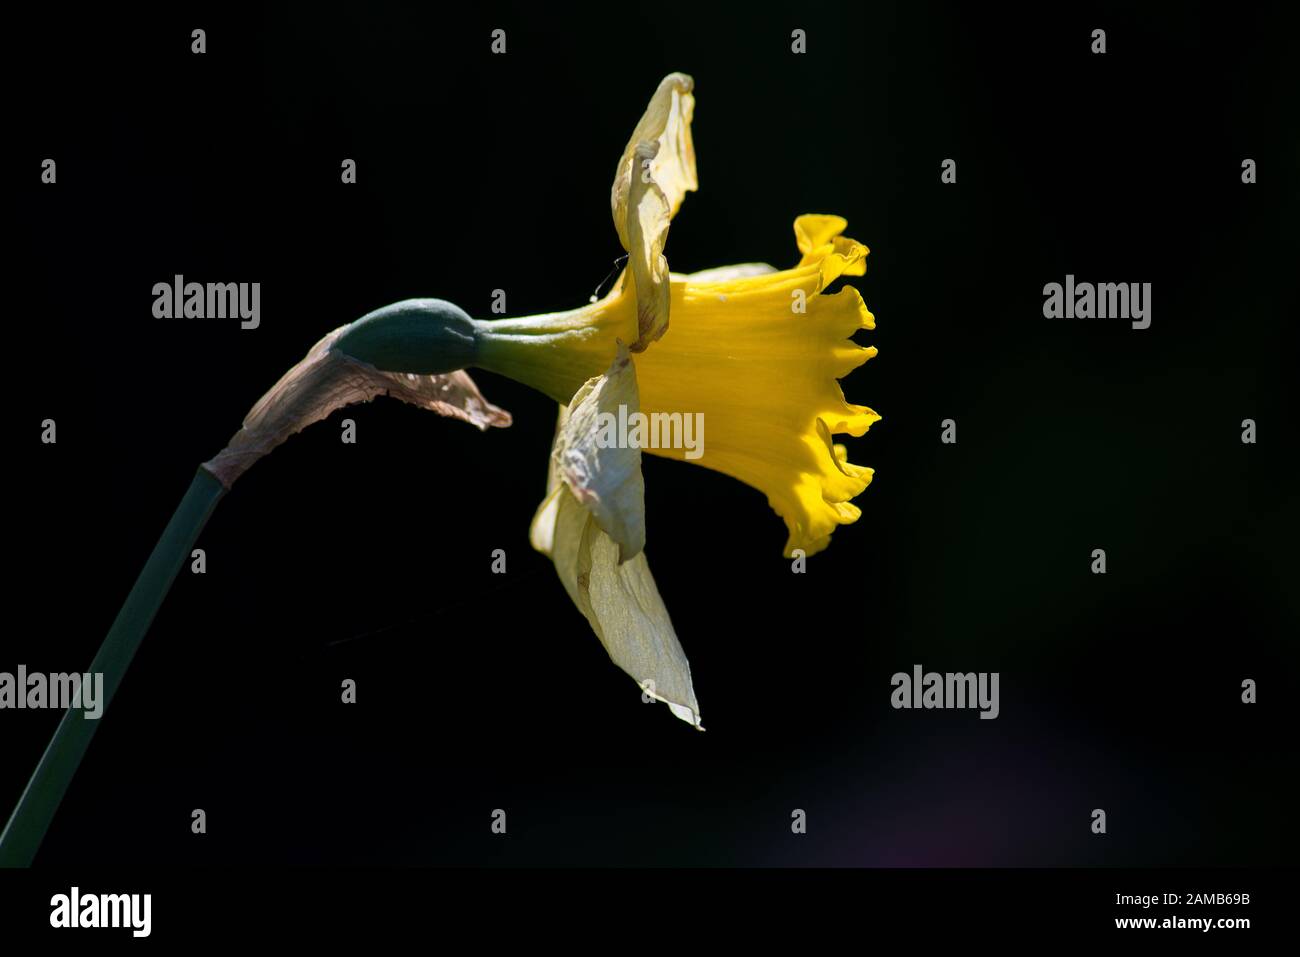 fiore singolo di daffodil catturato alla luce del sole con petali evidenziati su uno sfondo scuro Foto Stock